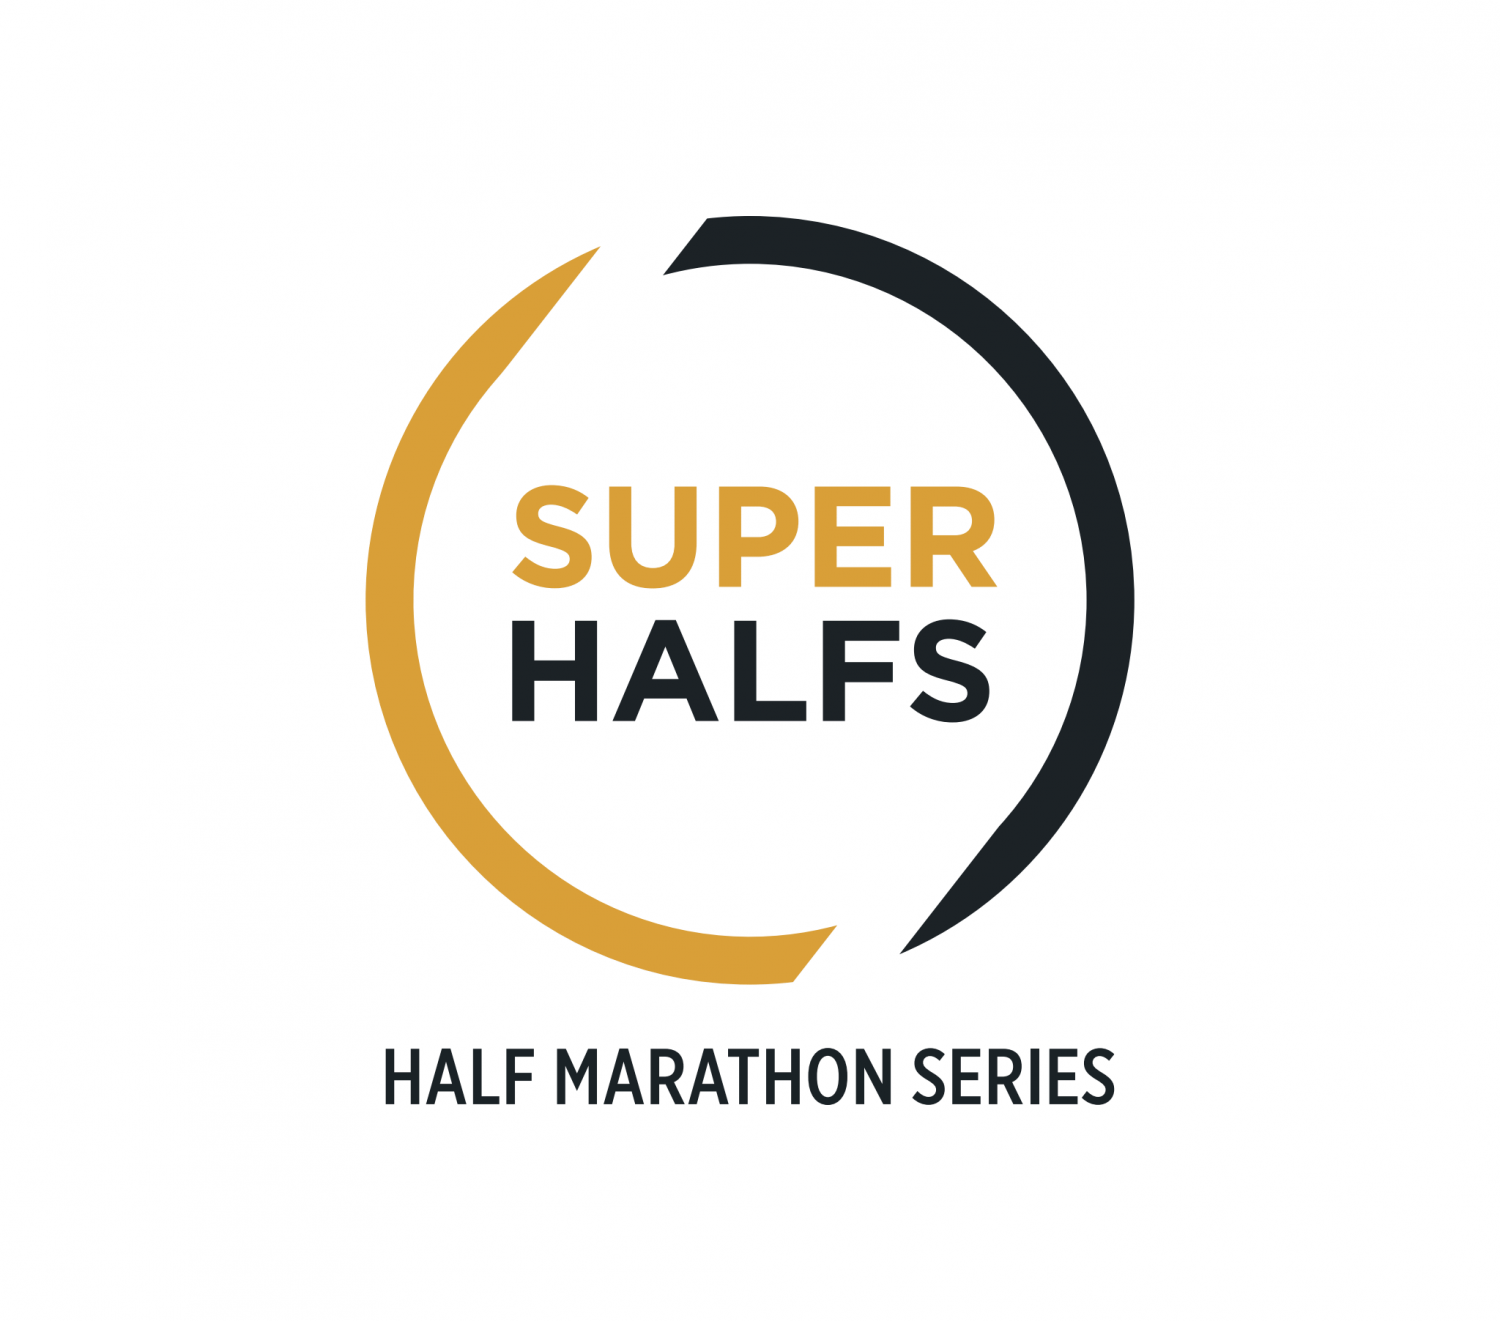 SuperHalfs - Half Marathon Series